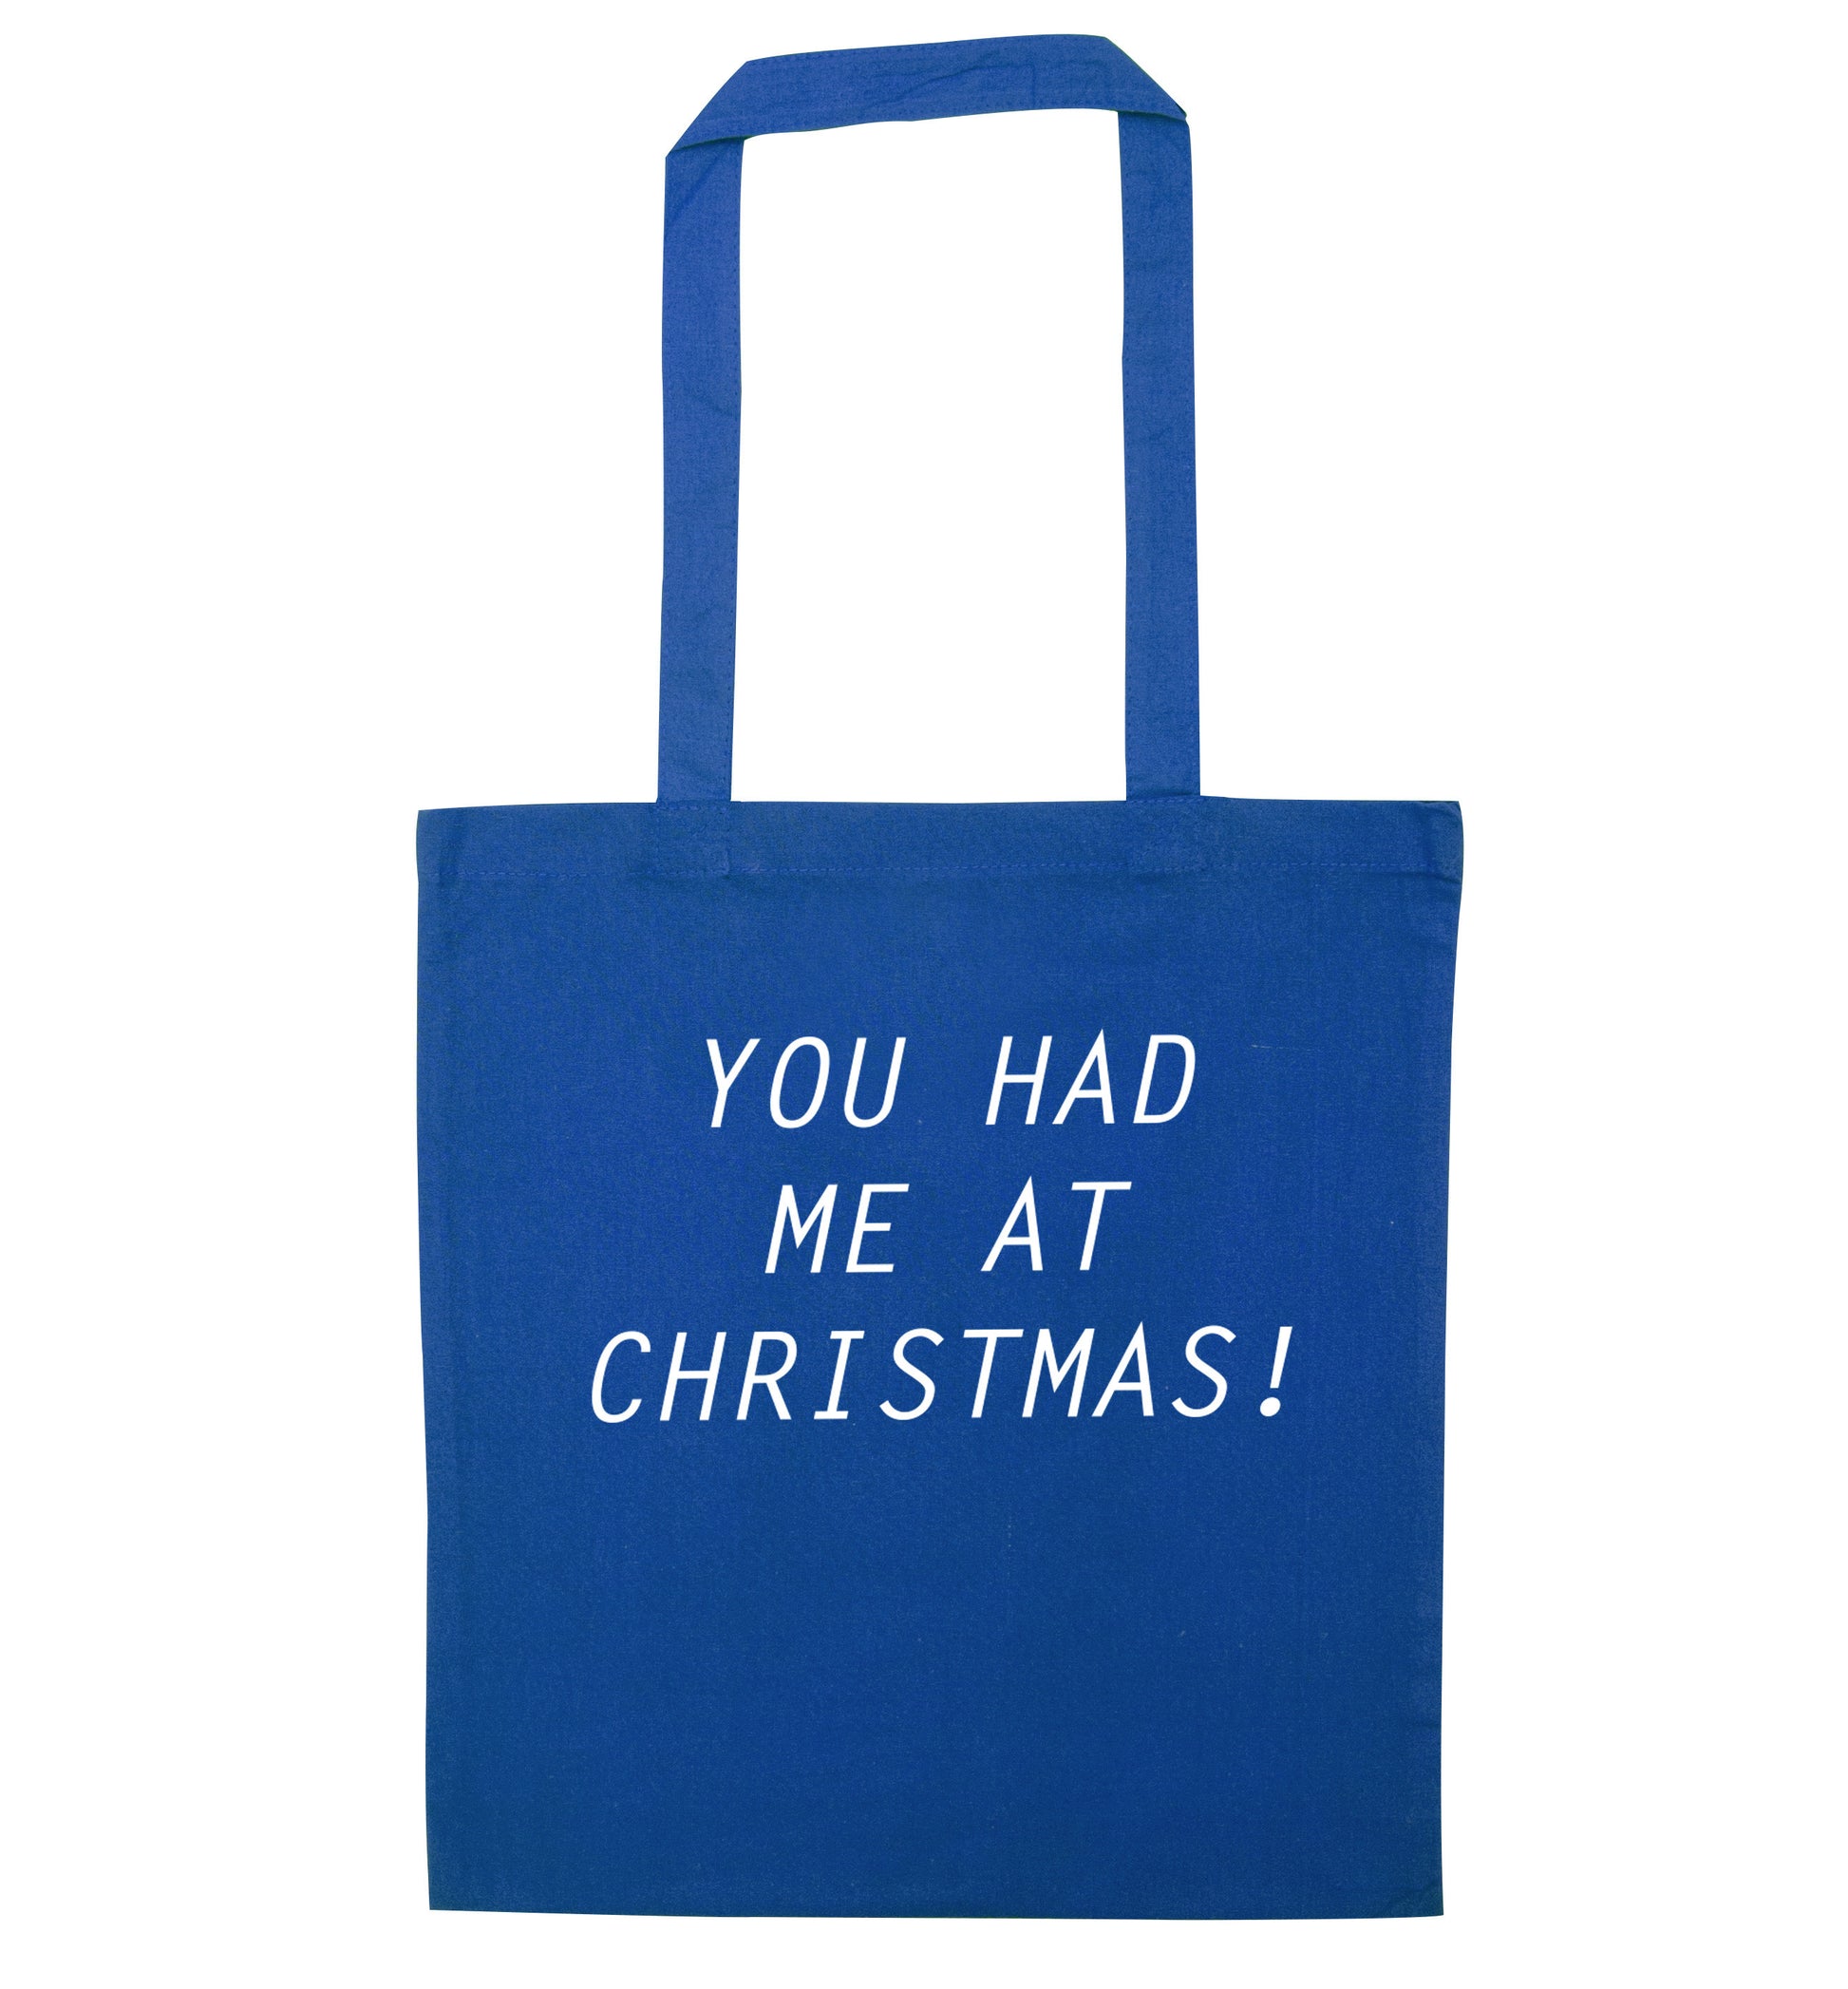 You had me at Christmas blue tote bag